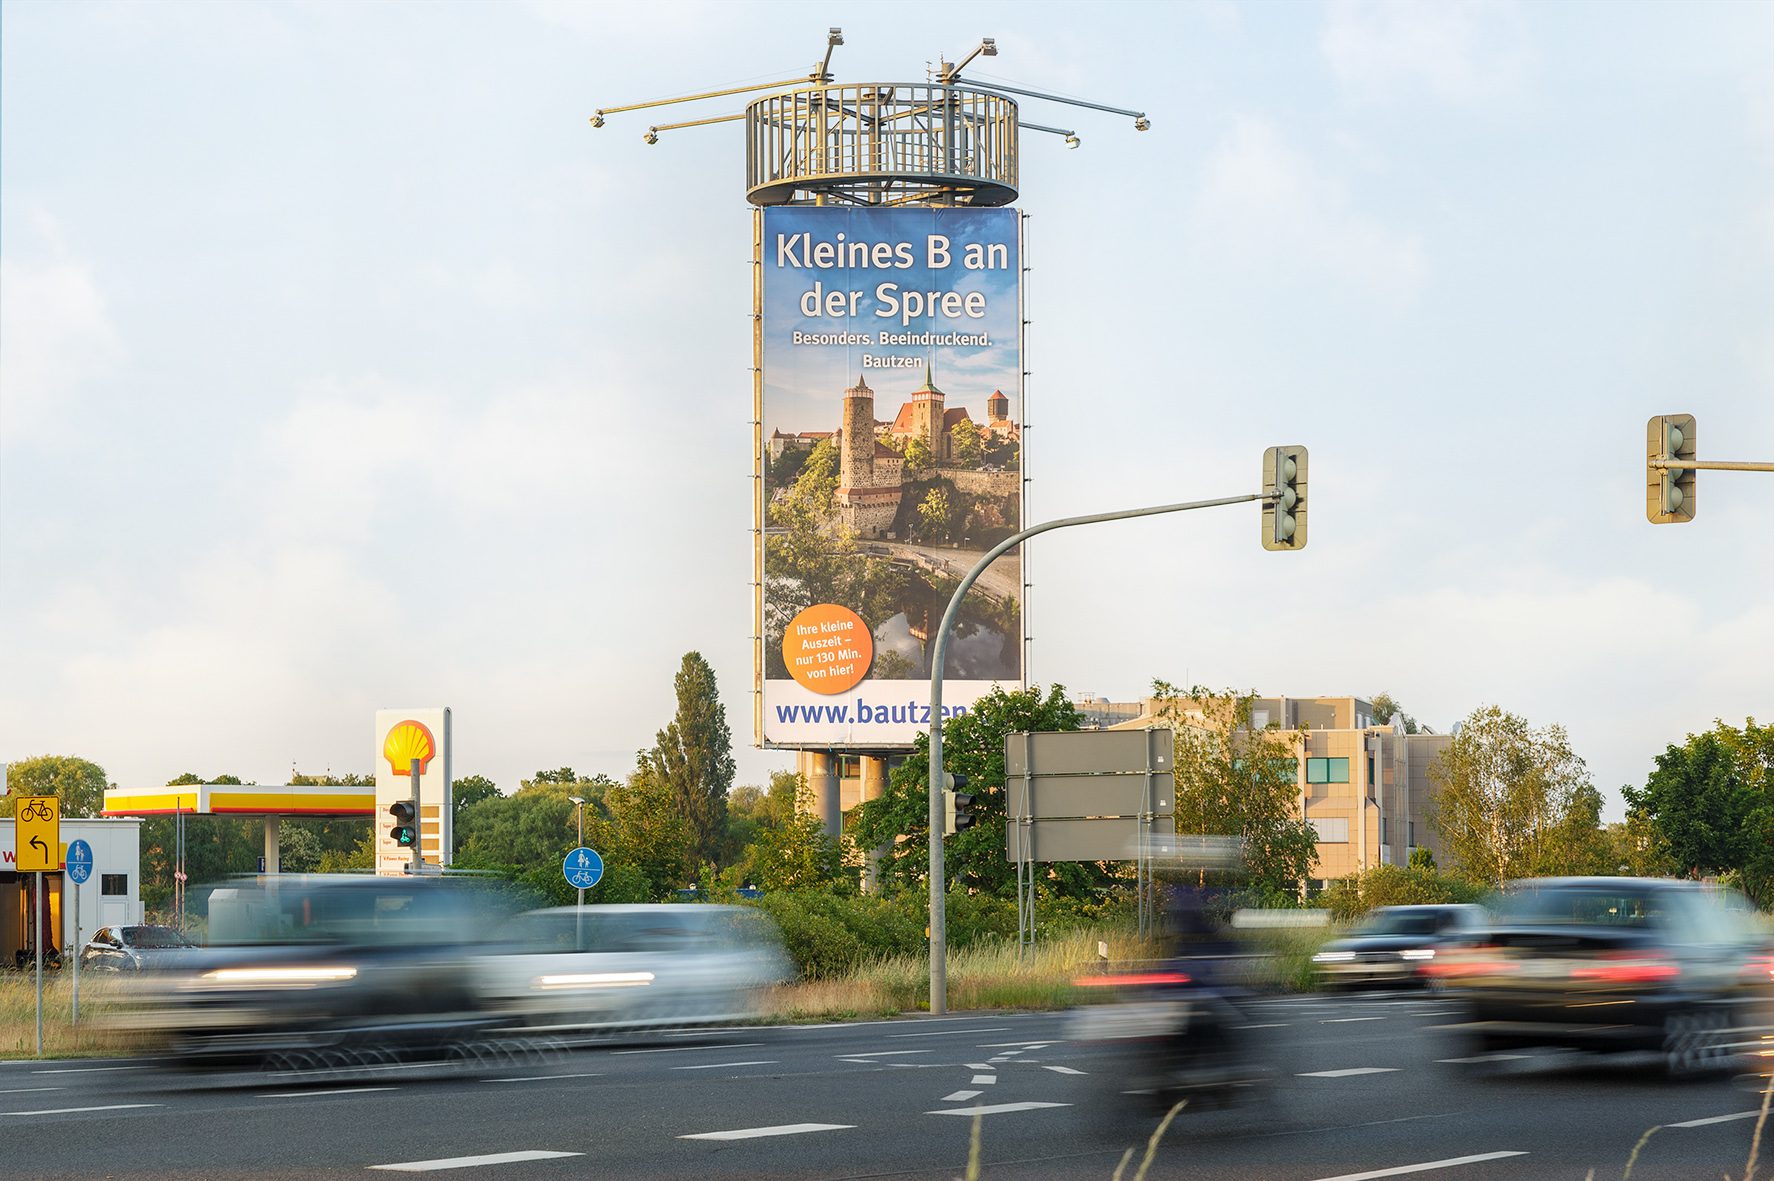 stadtmarketing-bautzen_berlin_traffic-tower-b96a-flughafen-berlin-ber-richtung-flughafen_015